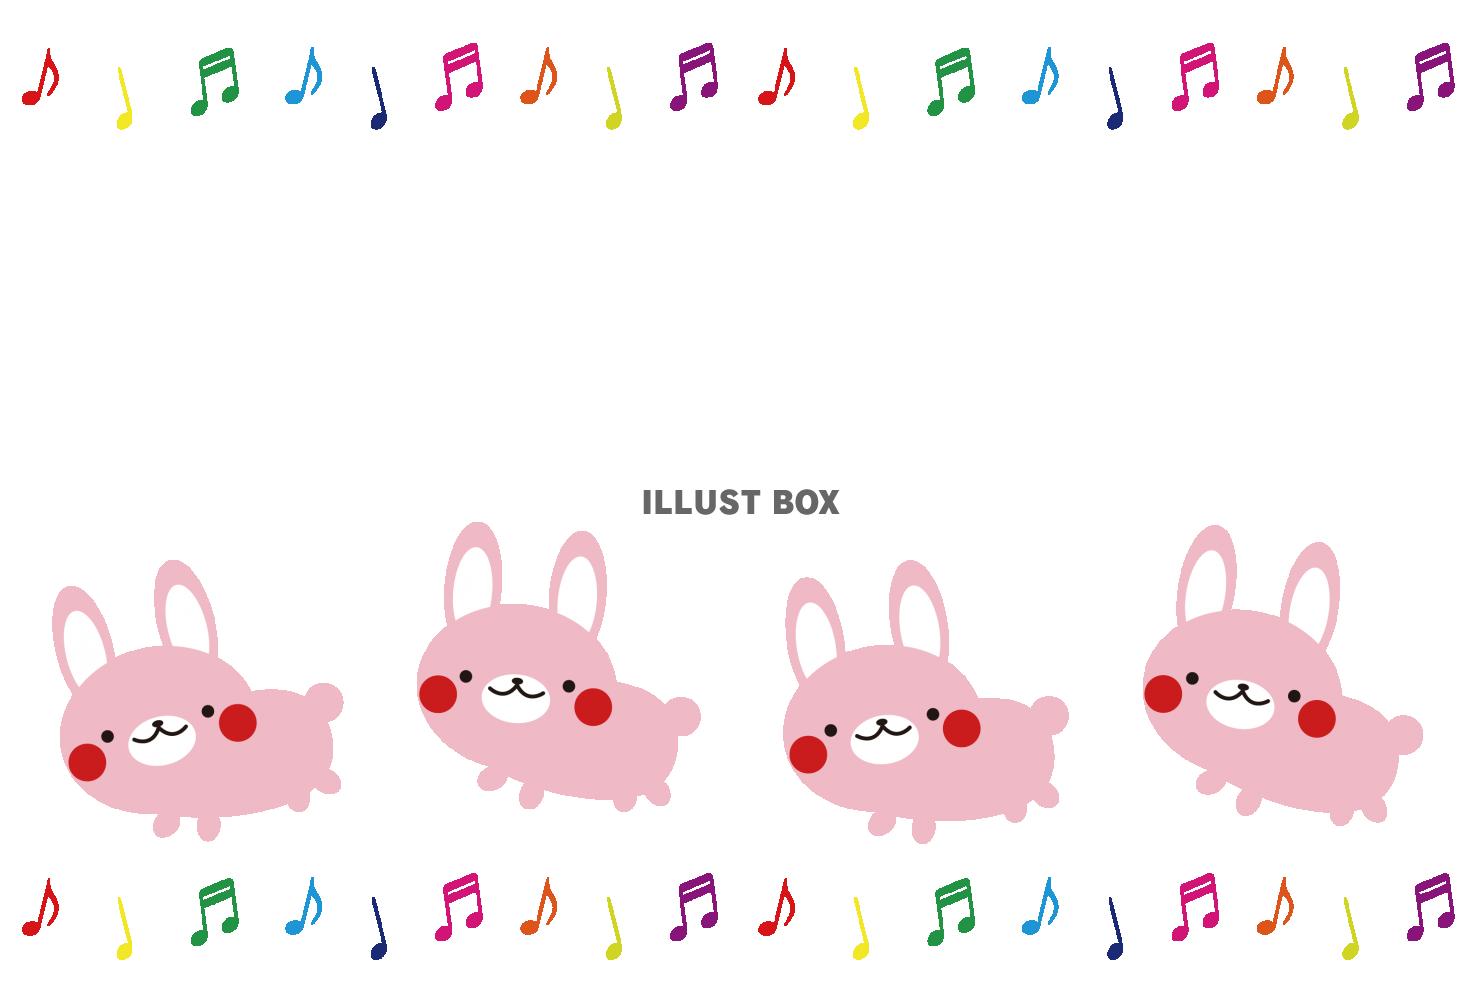 横型のカラフル音符と4匹のウサギのフレーム